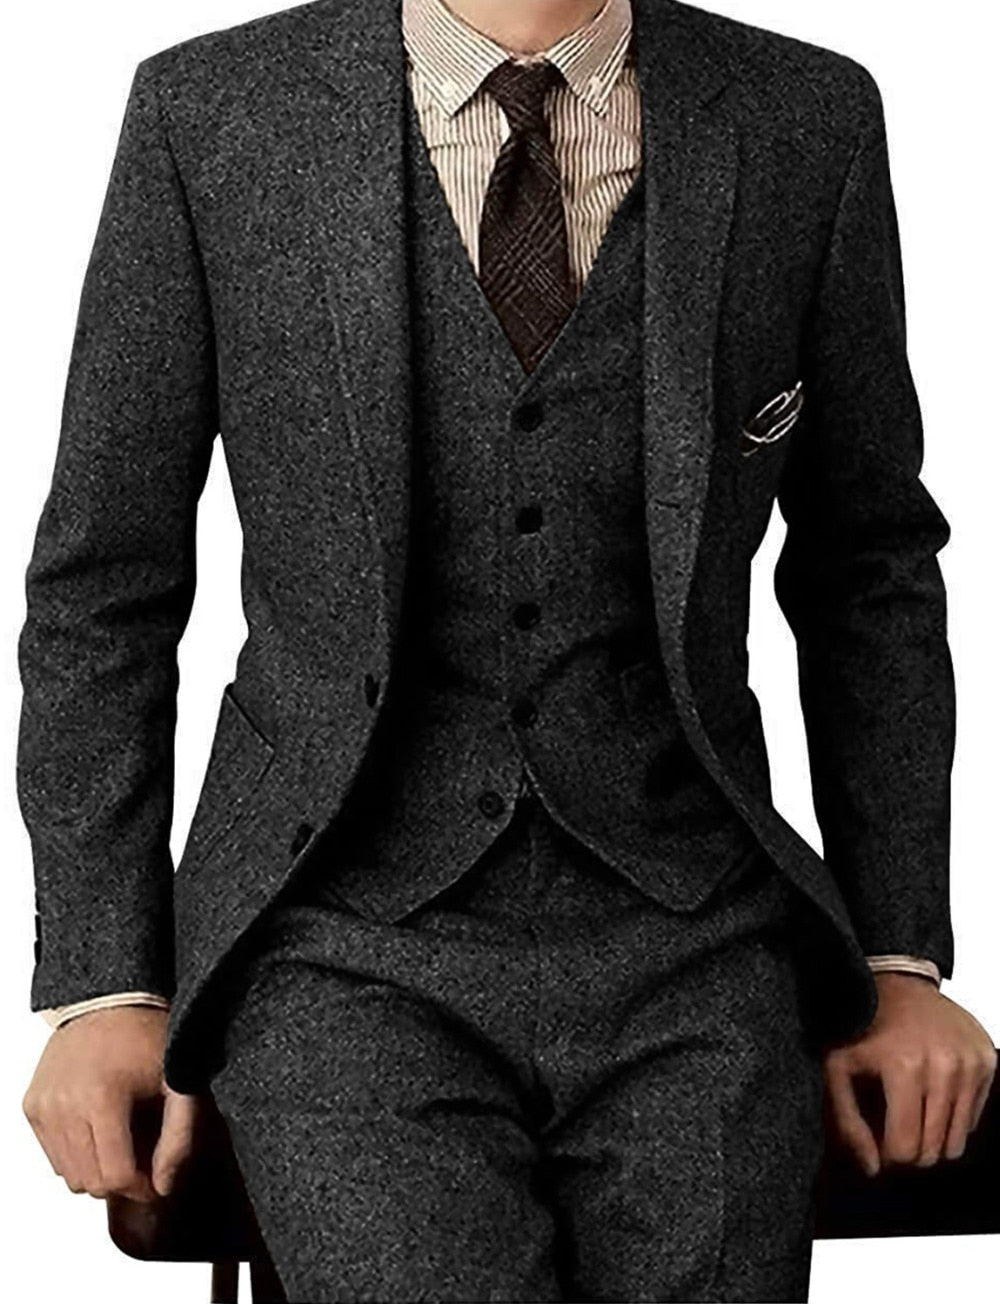 Formal Business Men Suits Tweed Herringbon Classic 3 Pies Groomsmen Grey Tuxedos for Wedding Blazer+Pants+Vest